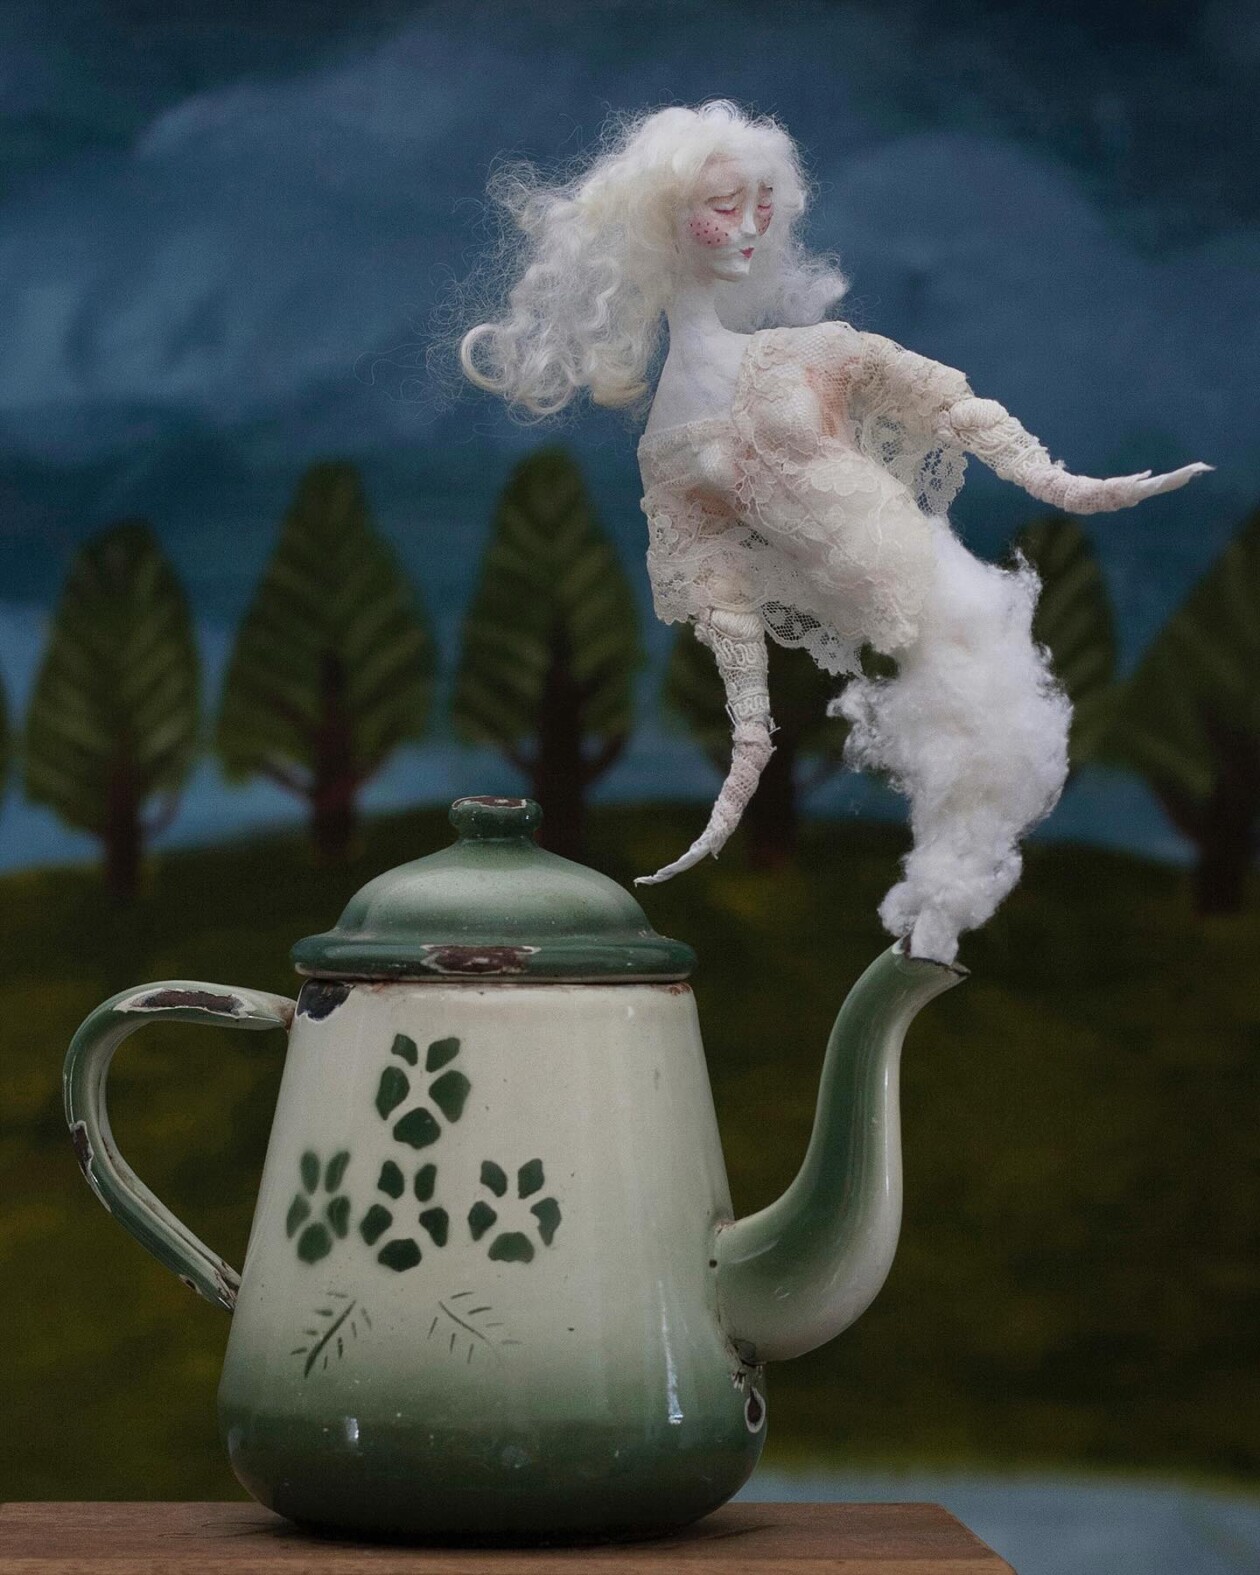 Magical Textile Dolls By Anouk De Groot (13)